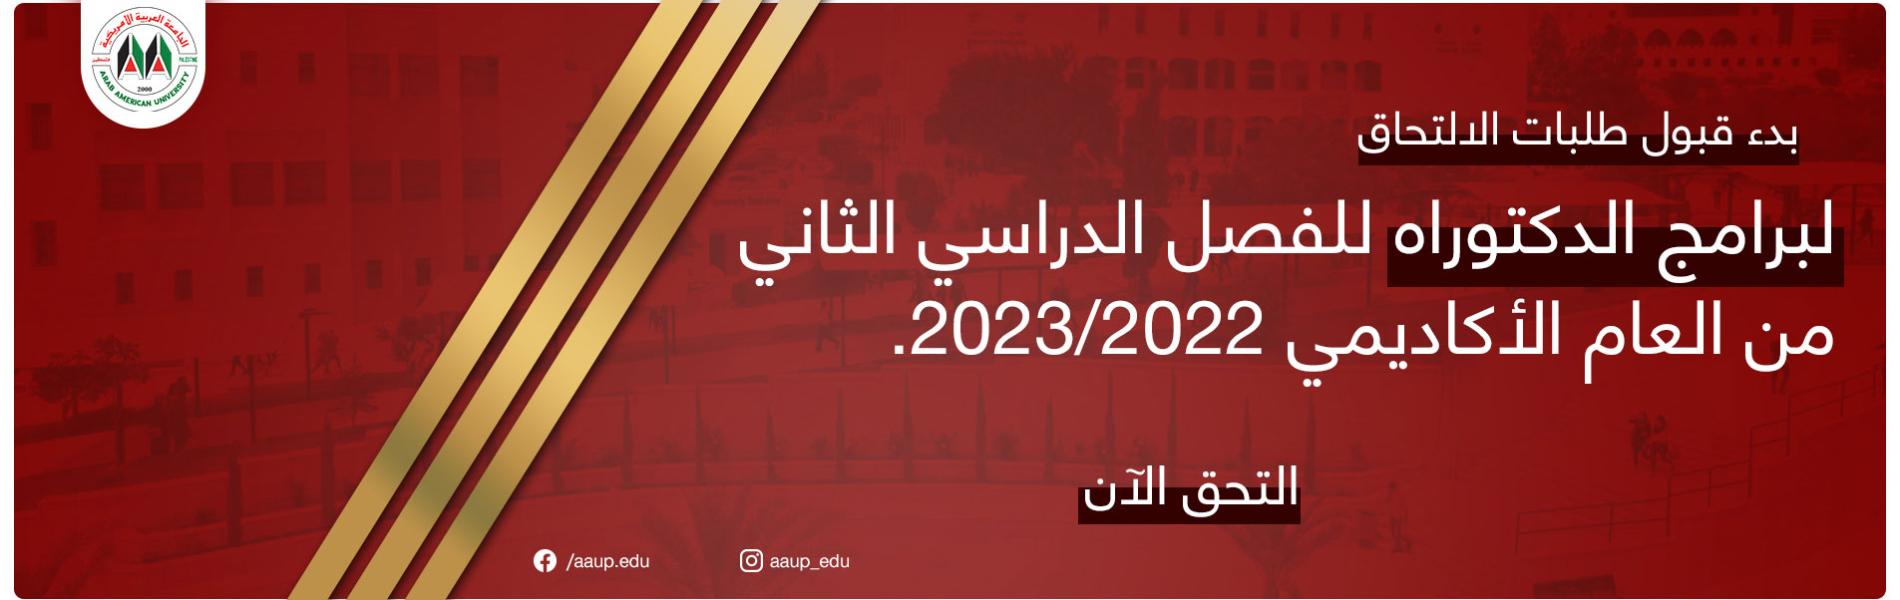 الإعلان عن بدء قبول طلبات الالتحاق في برامج الدكتوراه للفصل الدراسي الثاني من العام الأكاديمي 2022\2